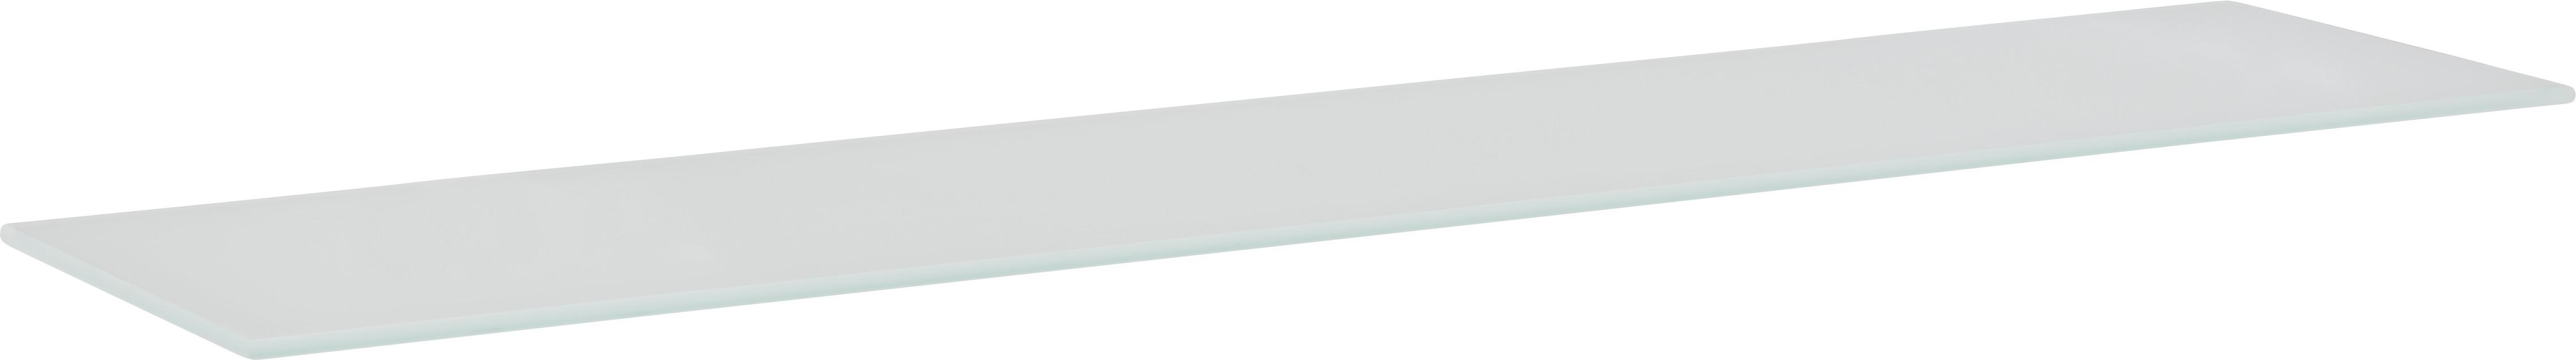 Glasablage in Weiß ca. 78x0,6x18cm - Weiß, Glas (78/0,6/18cm) - Modern Living